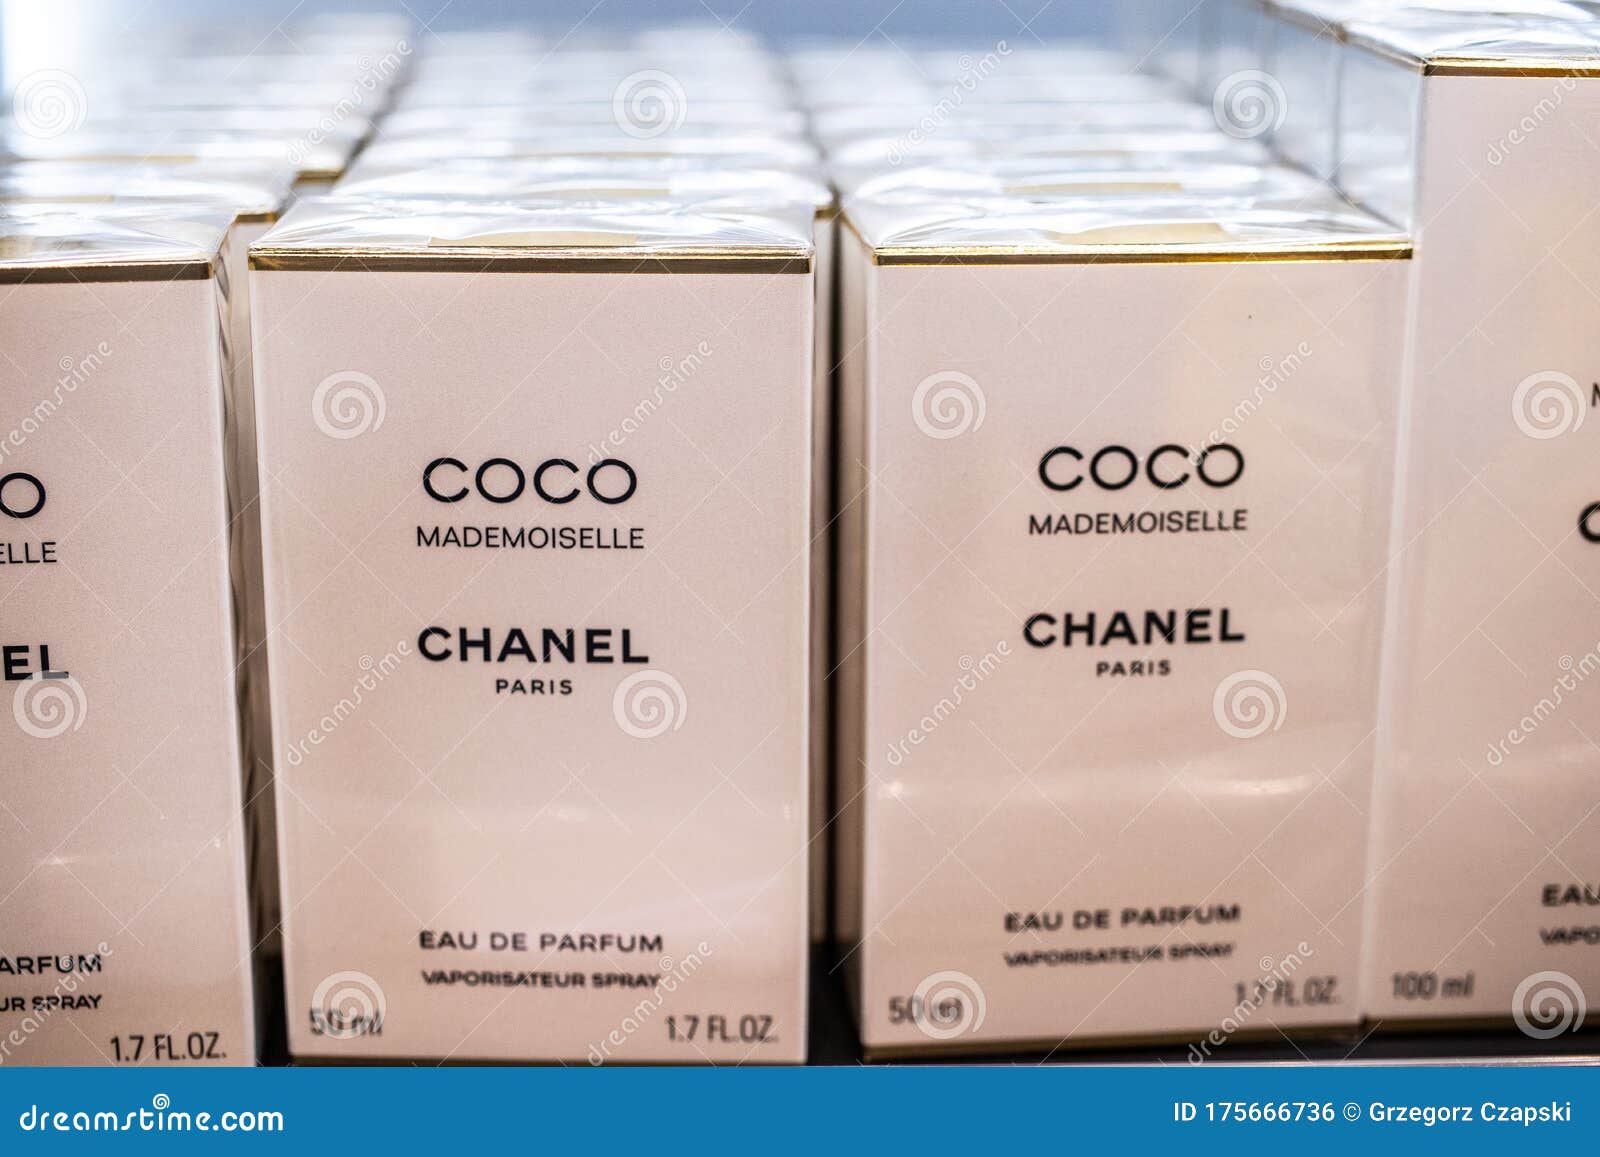 Coco Mademoiselle-Chanel-Parfüm Auf Dem Schaufenster Für Den Verkauf  Redaktionelles Foto - Bild von illustrativ, flasche: 175666736